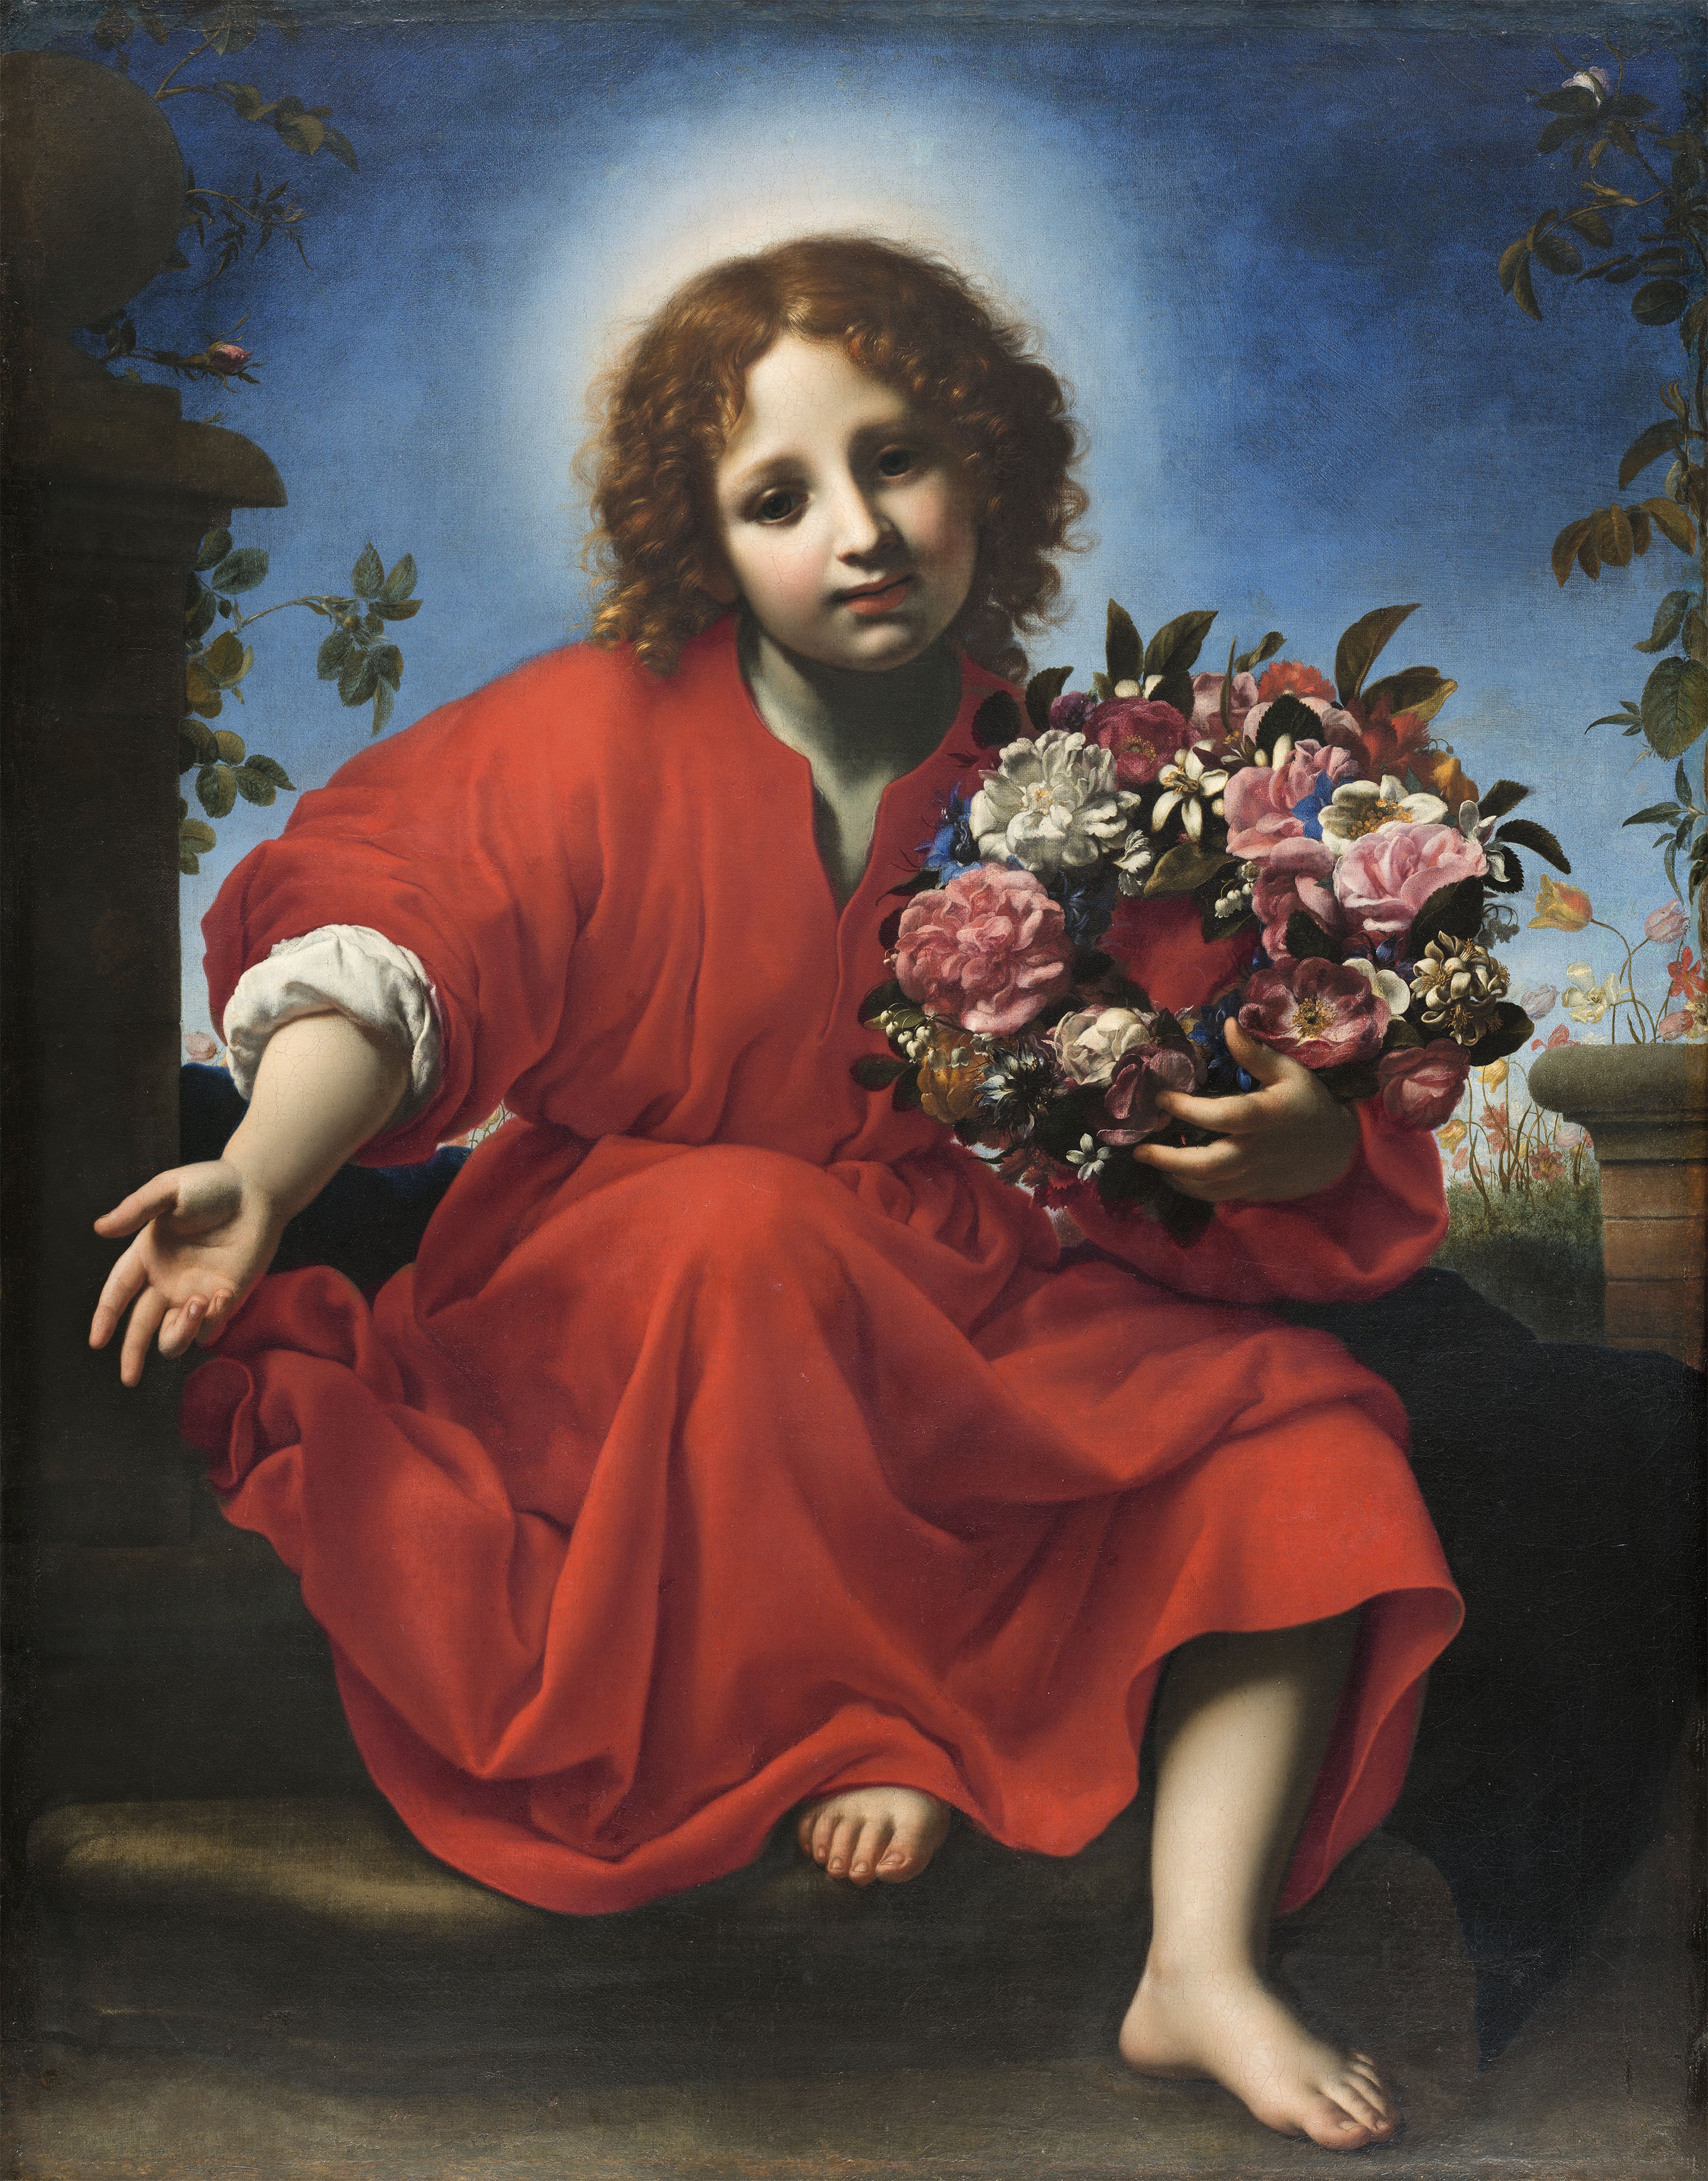 The Infant Christ with a Floral Wreath. El Niño Jesús con una corona de flores, 1663